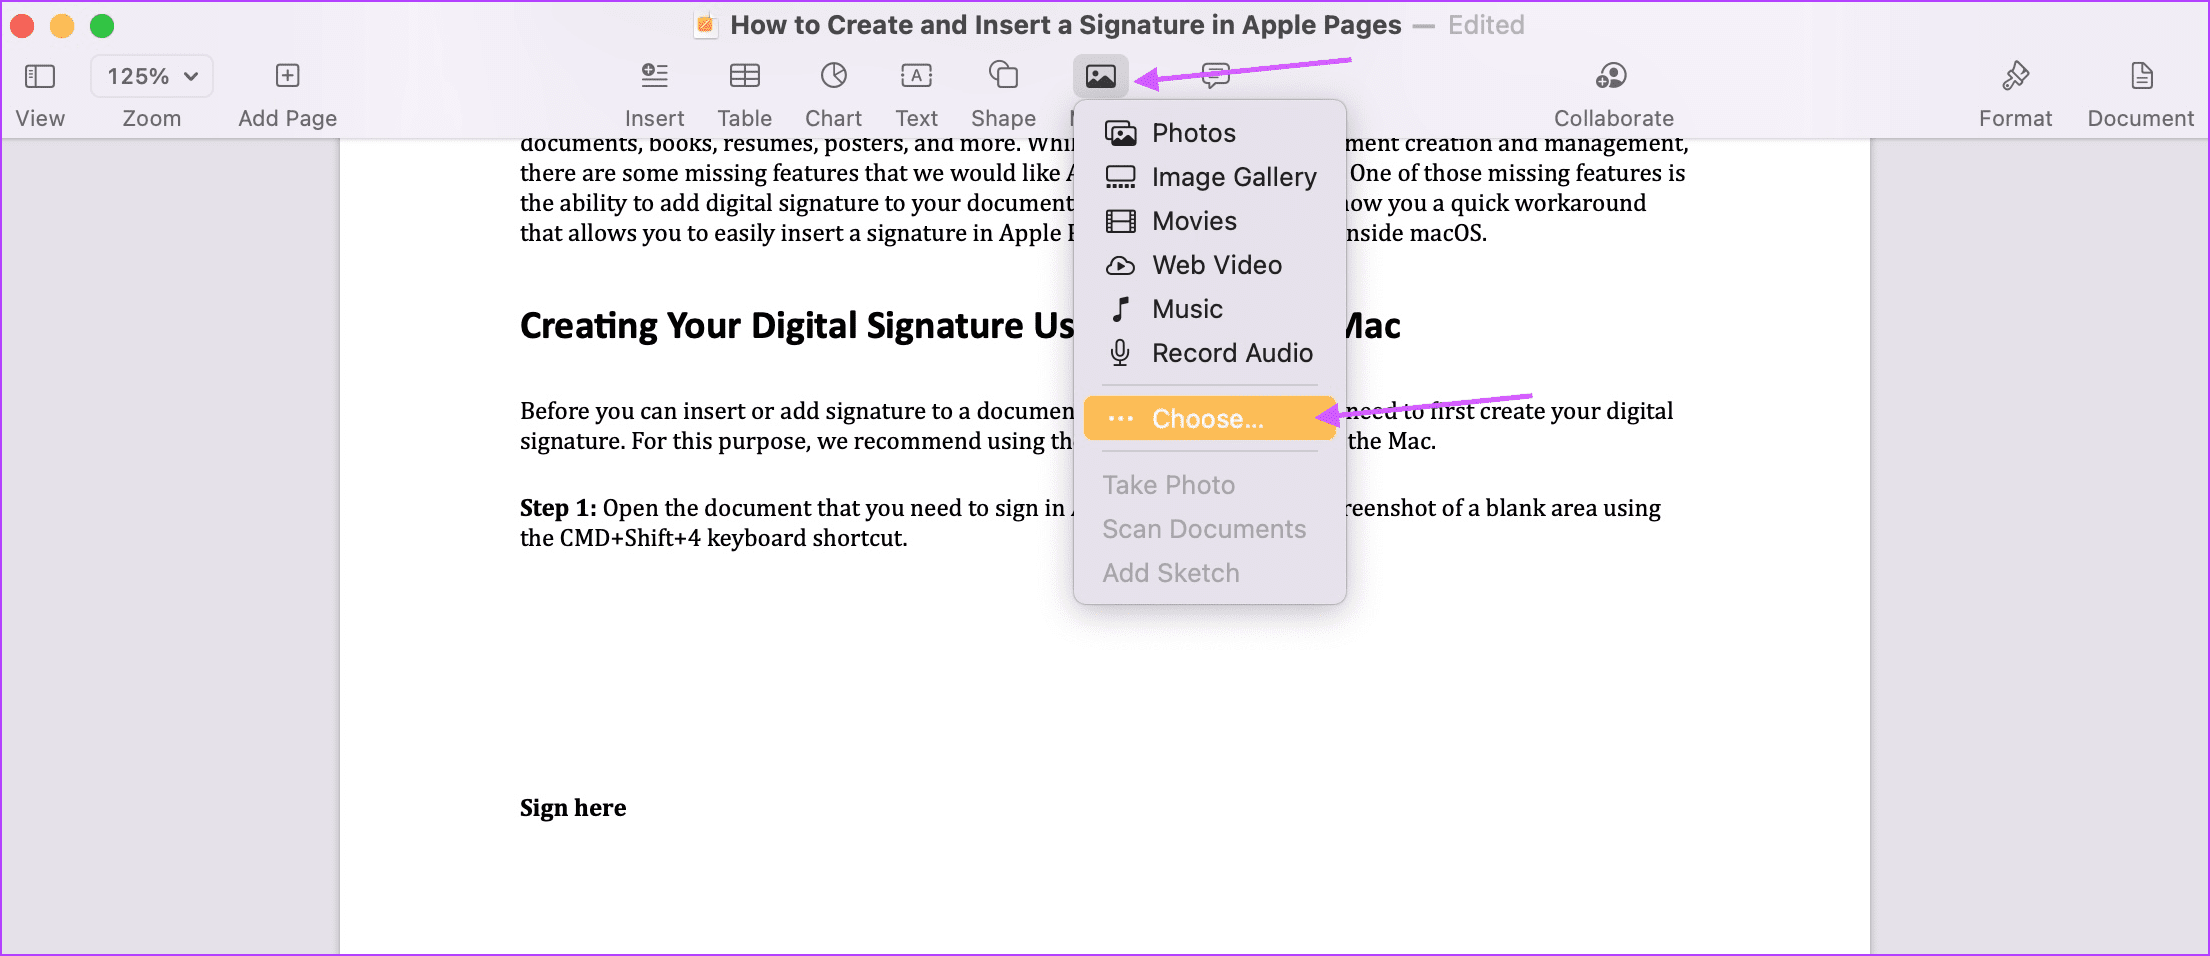 Ingrese su firma en las páginas de Apple 1